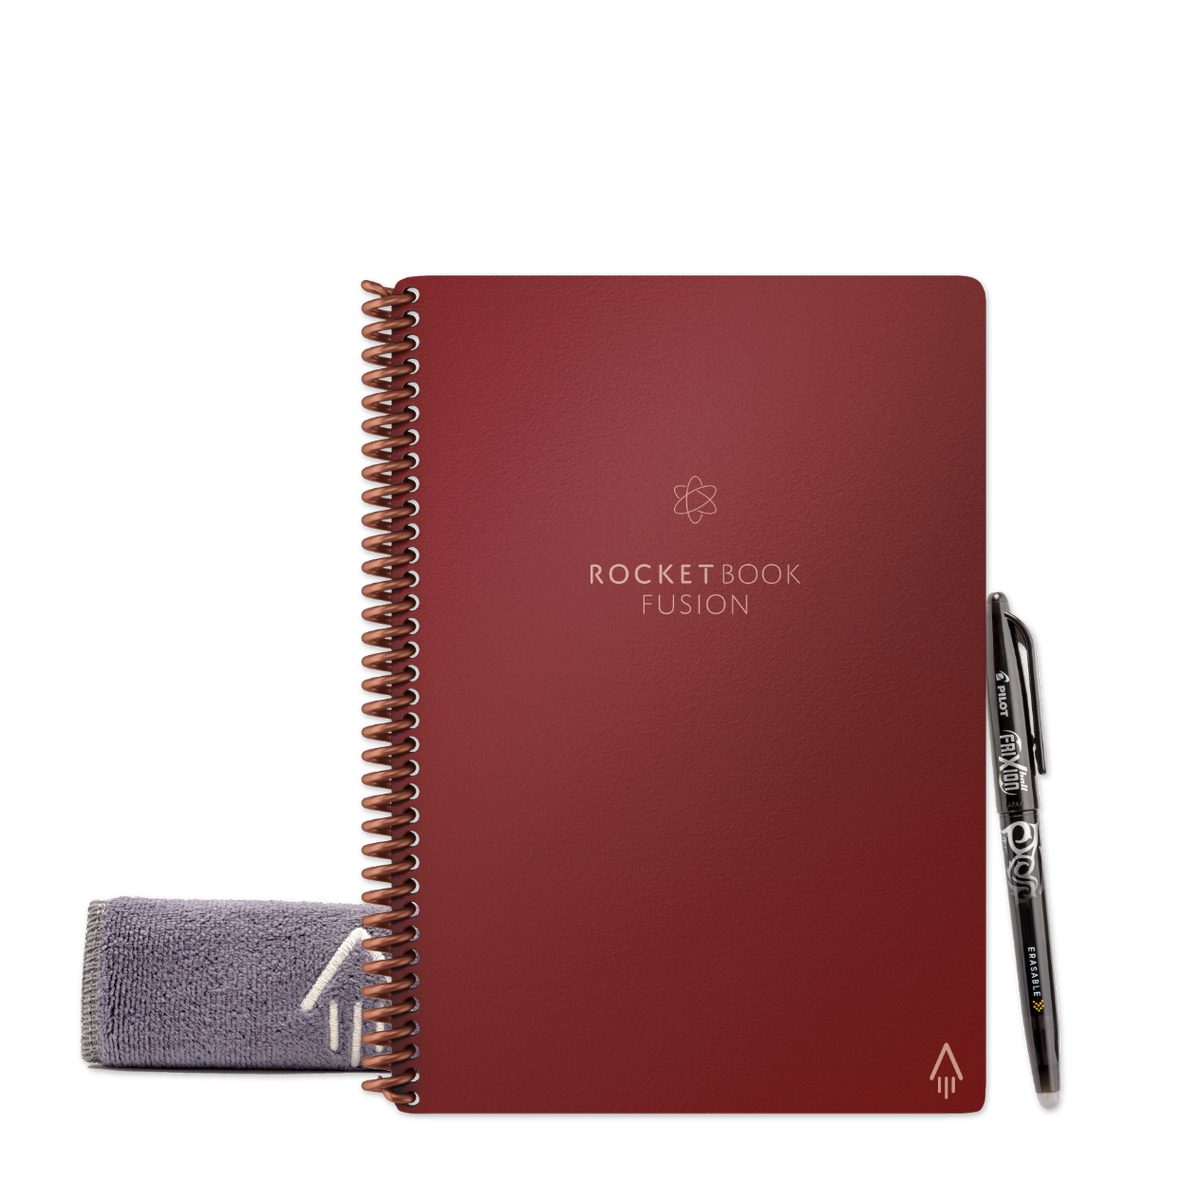 Rocketbook Everlast Notizbuch Book Sky, Symbol Scarlet und FUSION mit Rocket Tagging und - Skizzenbuch Notiz- App-Anbindung